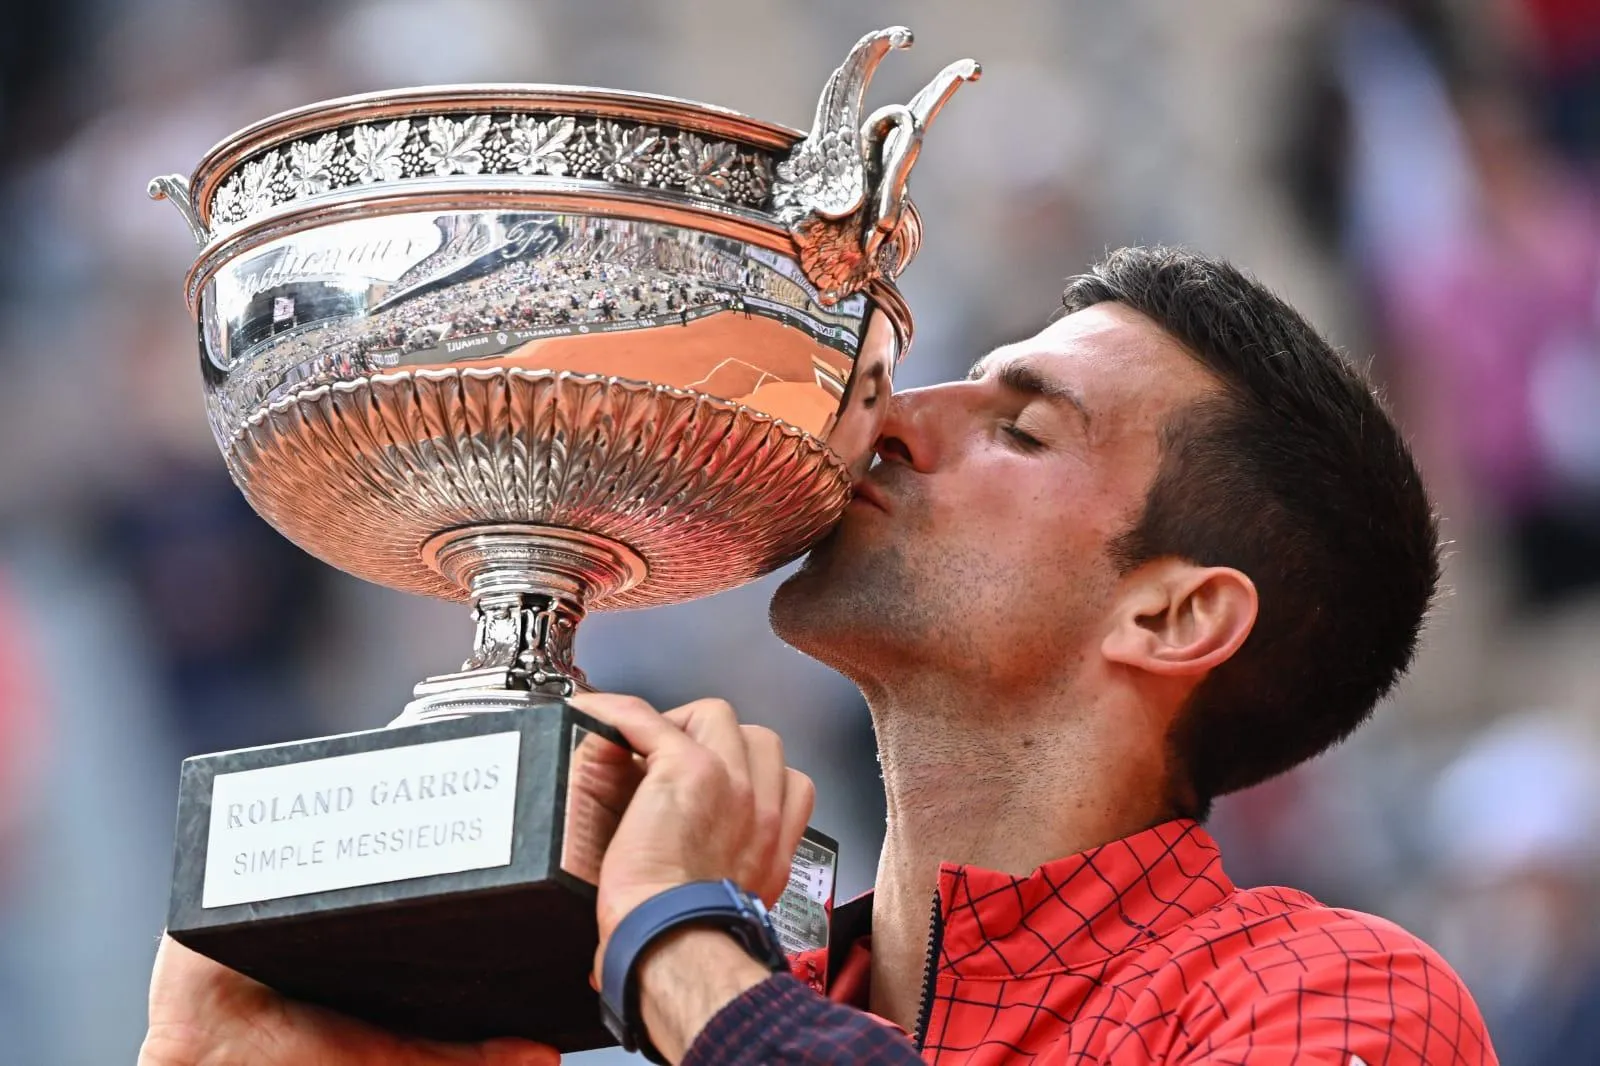 Djokovic vence de virada e vai para as oitavas de final no US Open